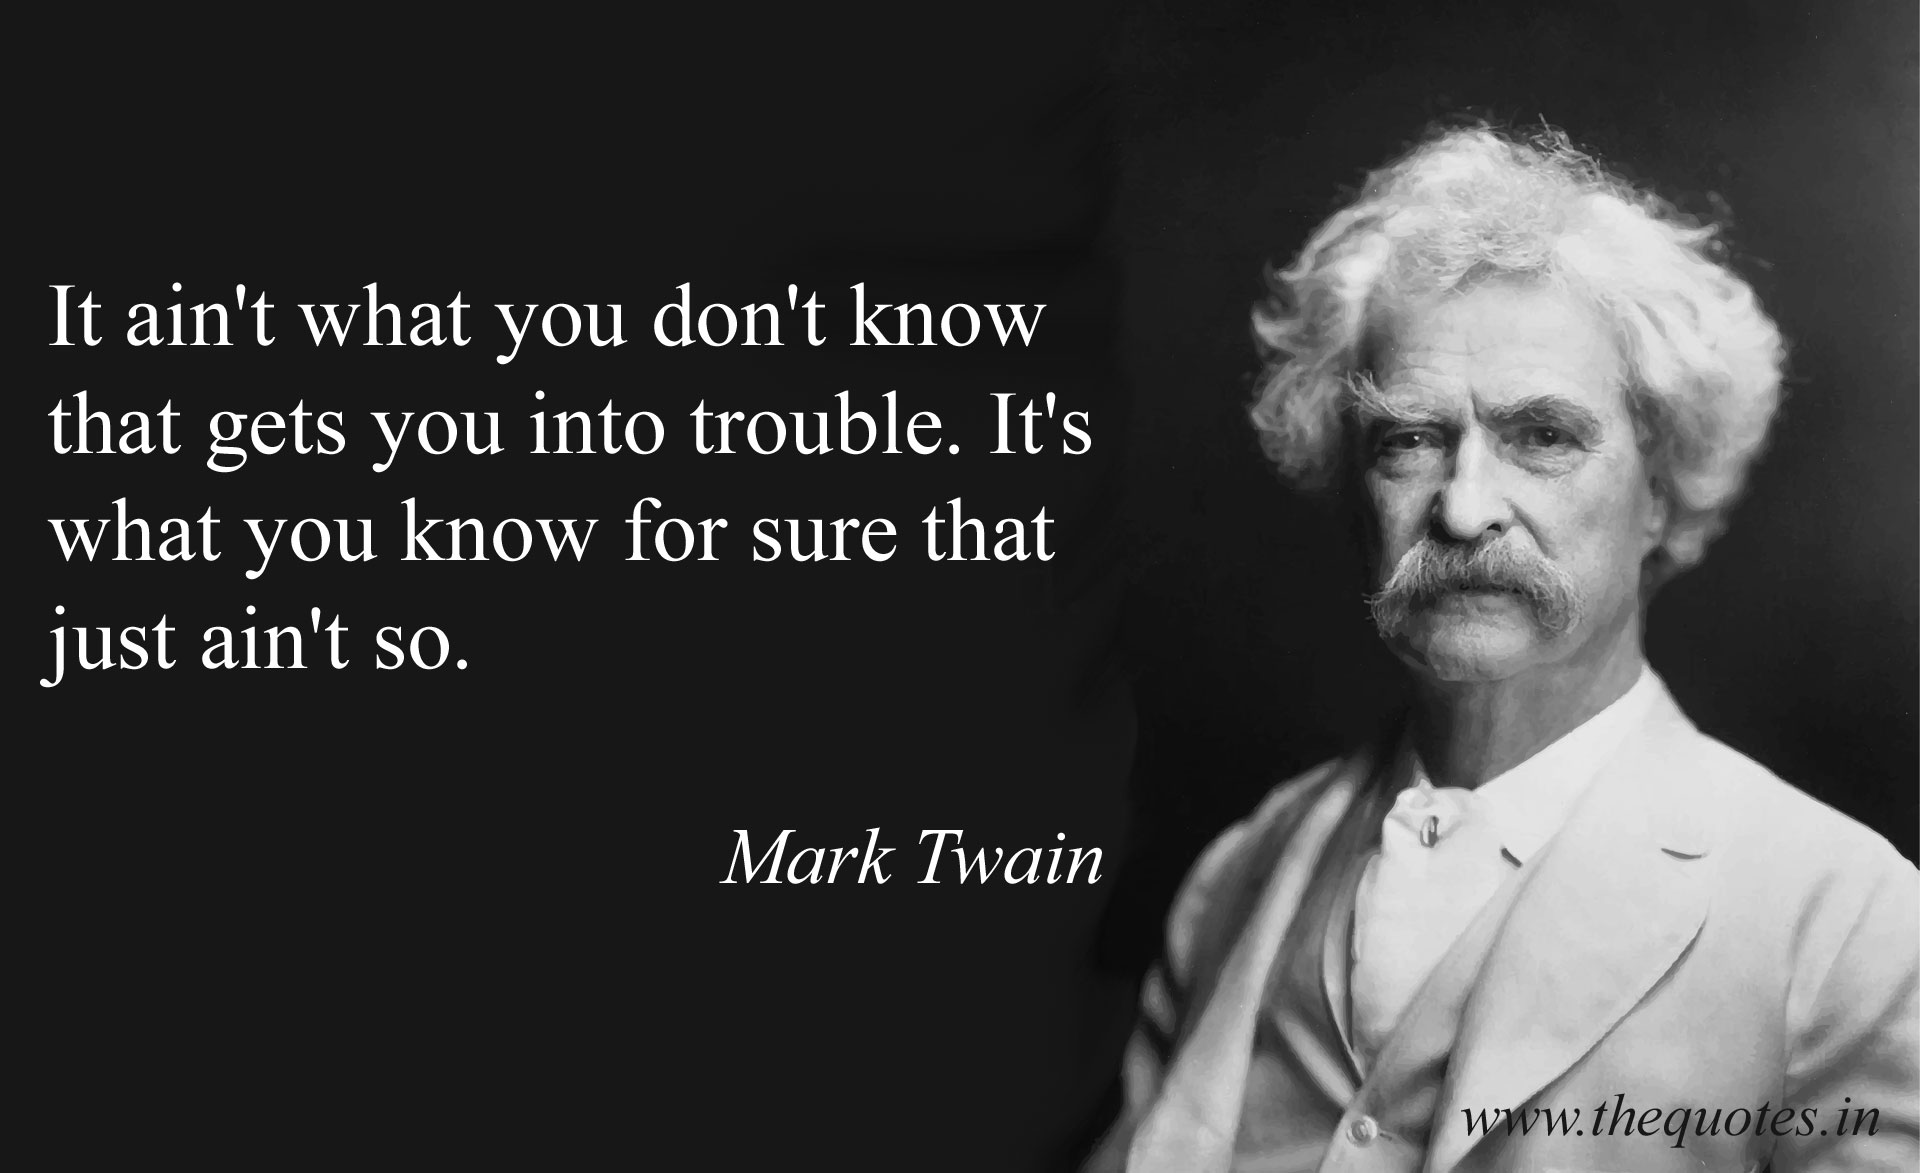 The Big Short Quotes Mark Twain - Gena Pegeen